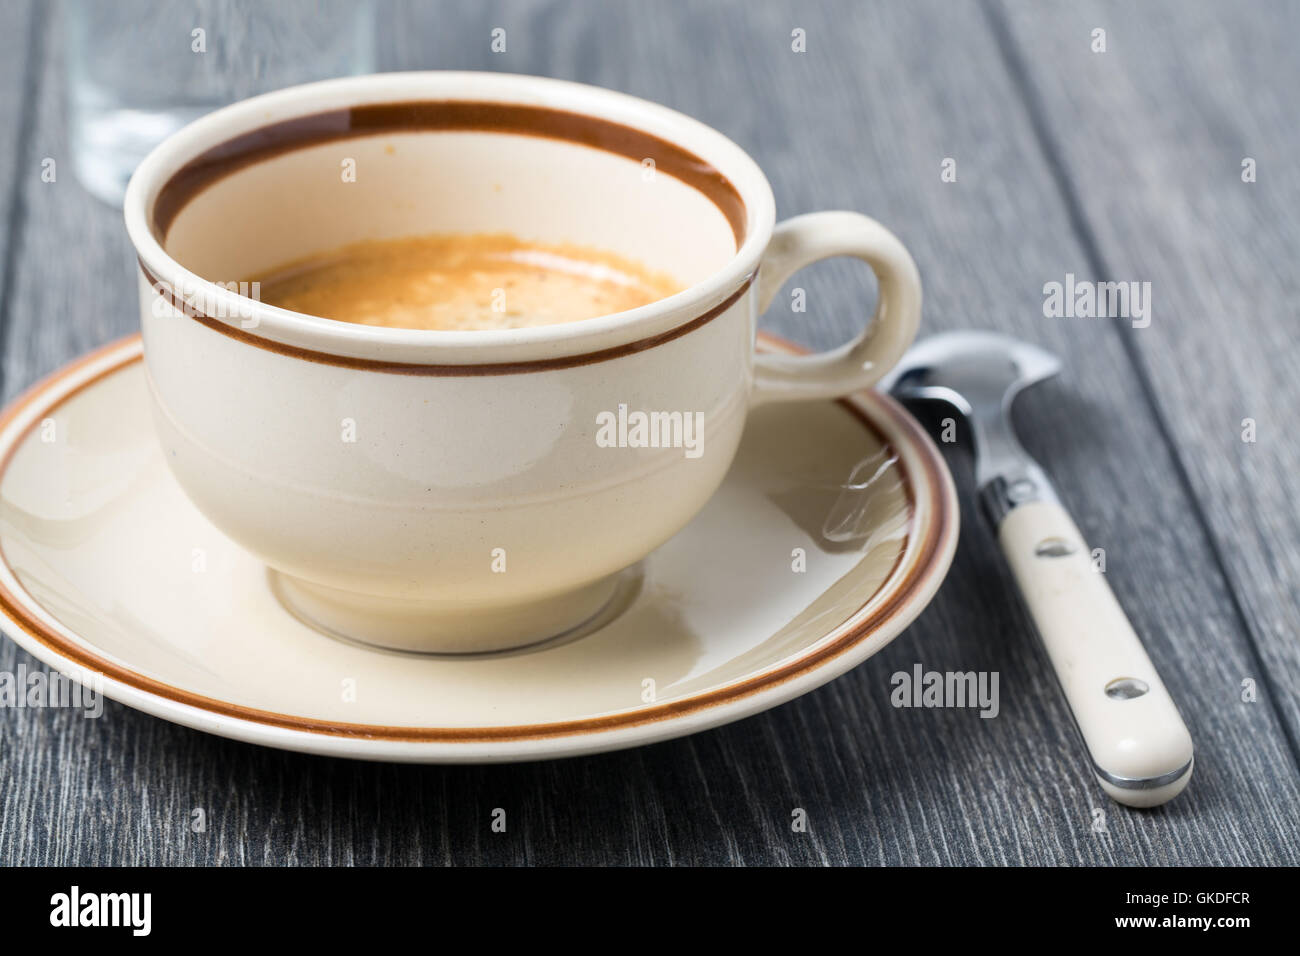 Con la taza de café espresso Foto de stock